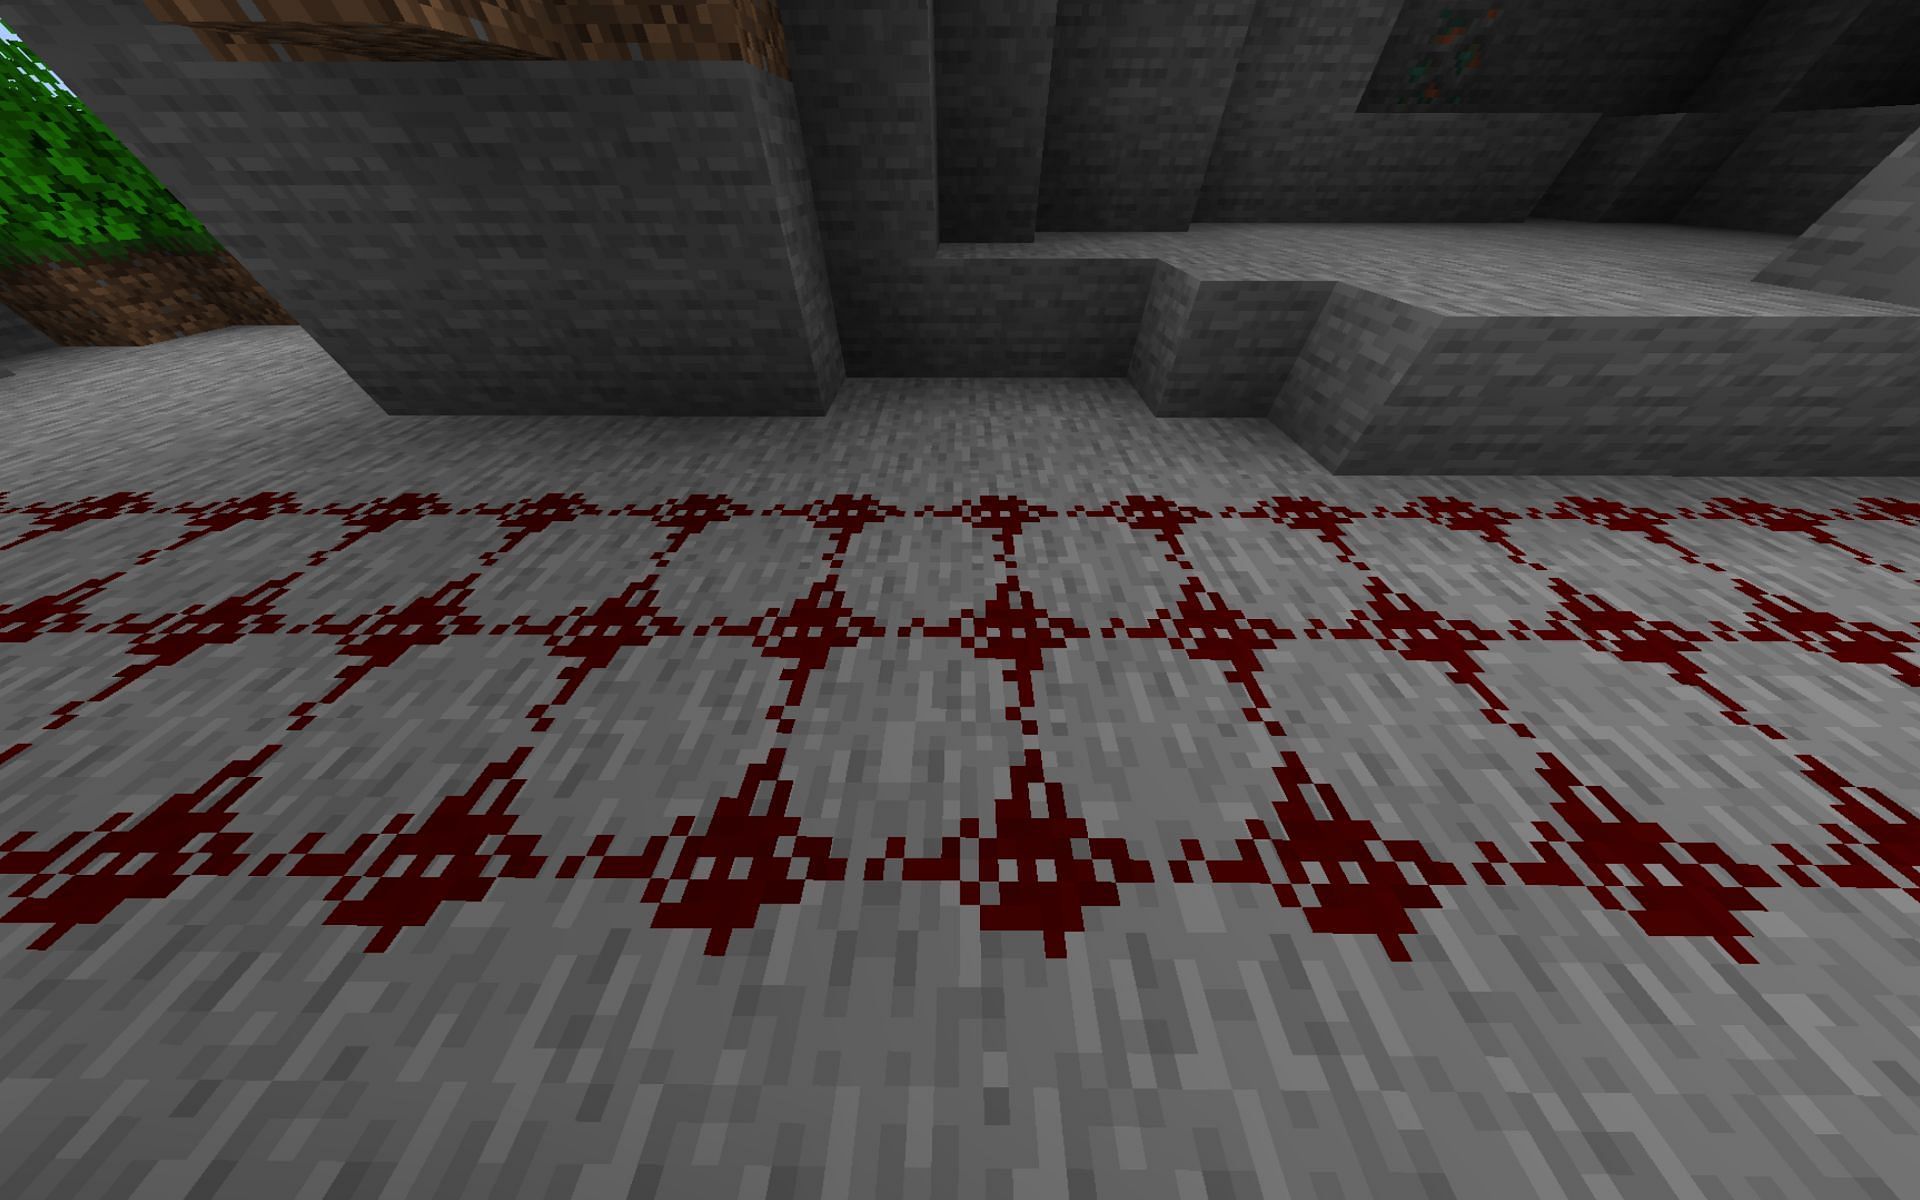 Redstone dust in Minecraft (Image via Minecraft)